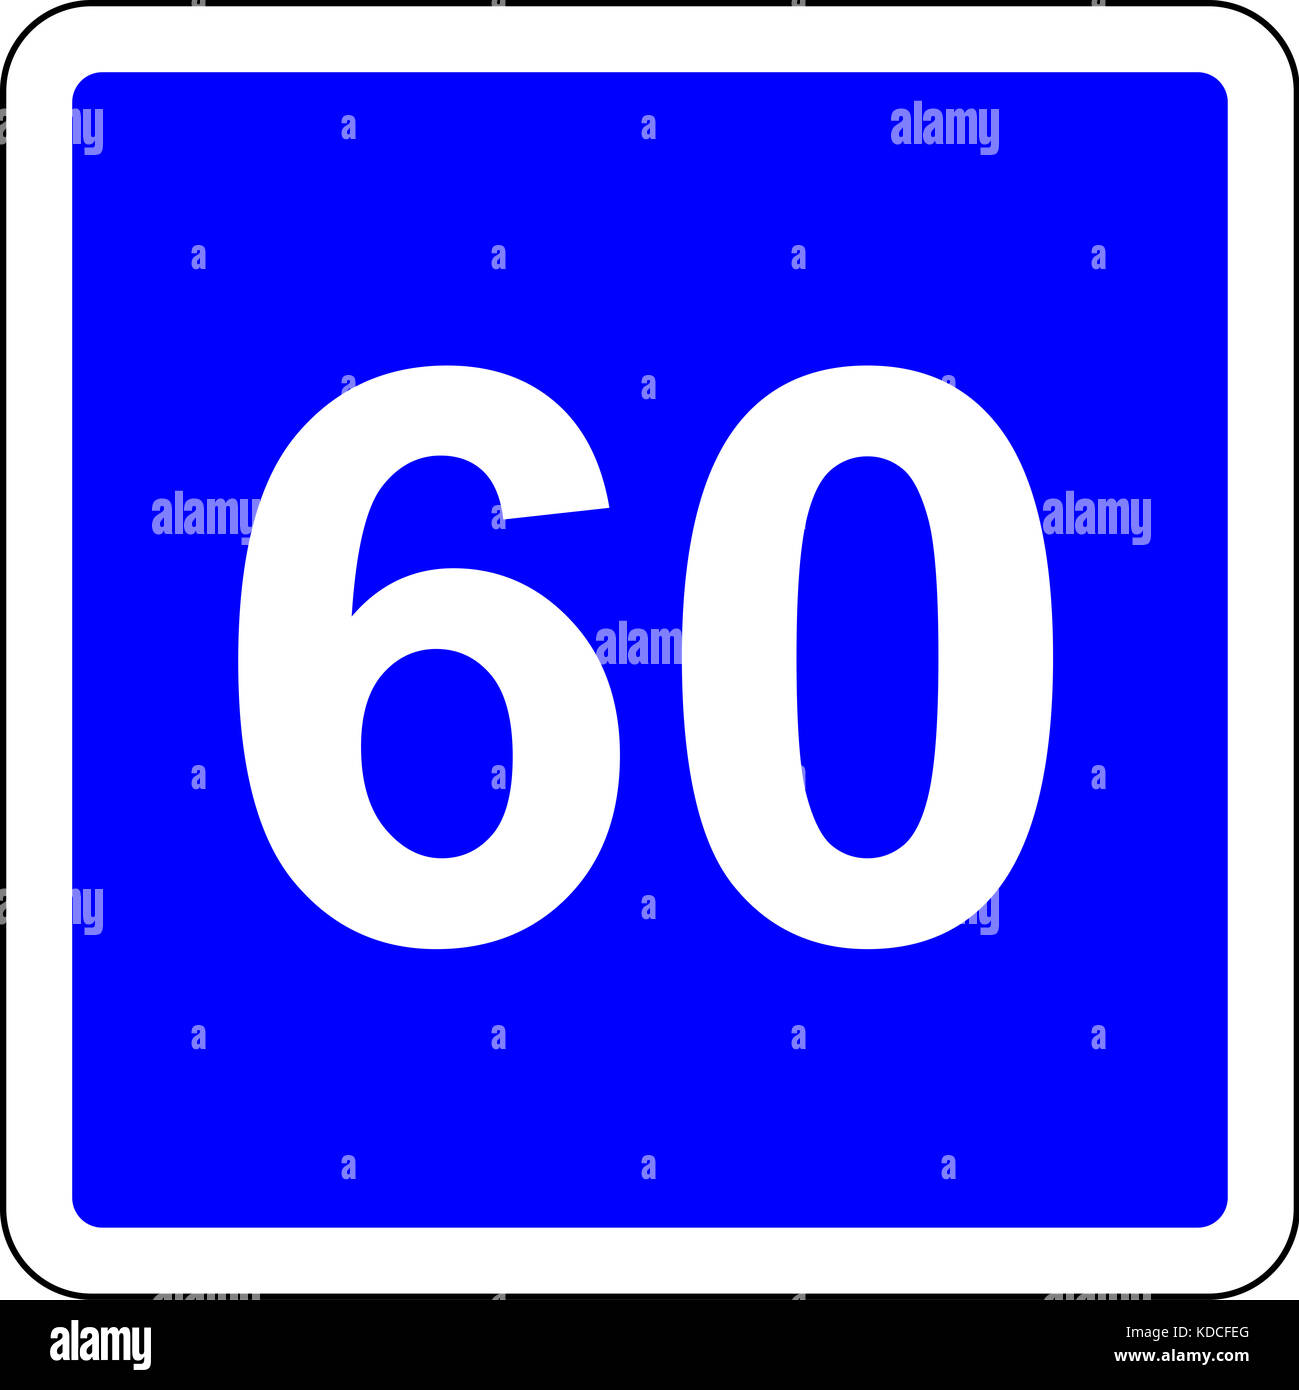 Schild mit vorgeschlagenen Geschwindigkeit von 60 km/h Stockfotografie -  Alamy